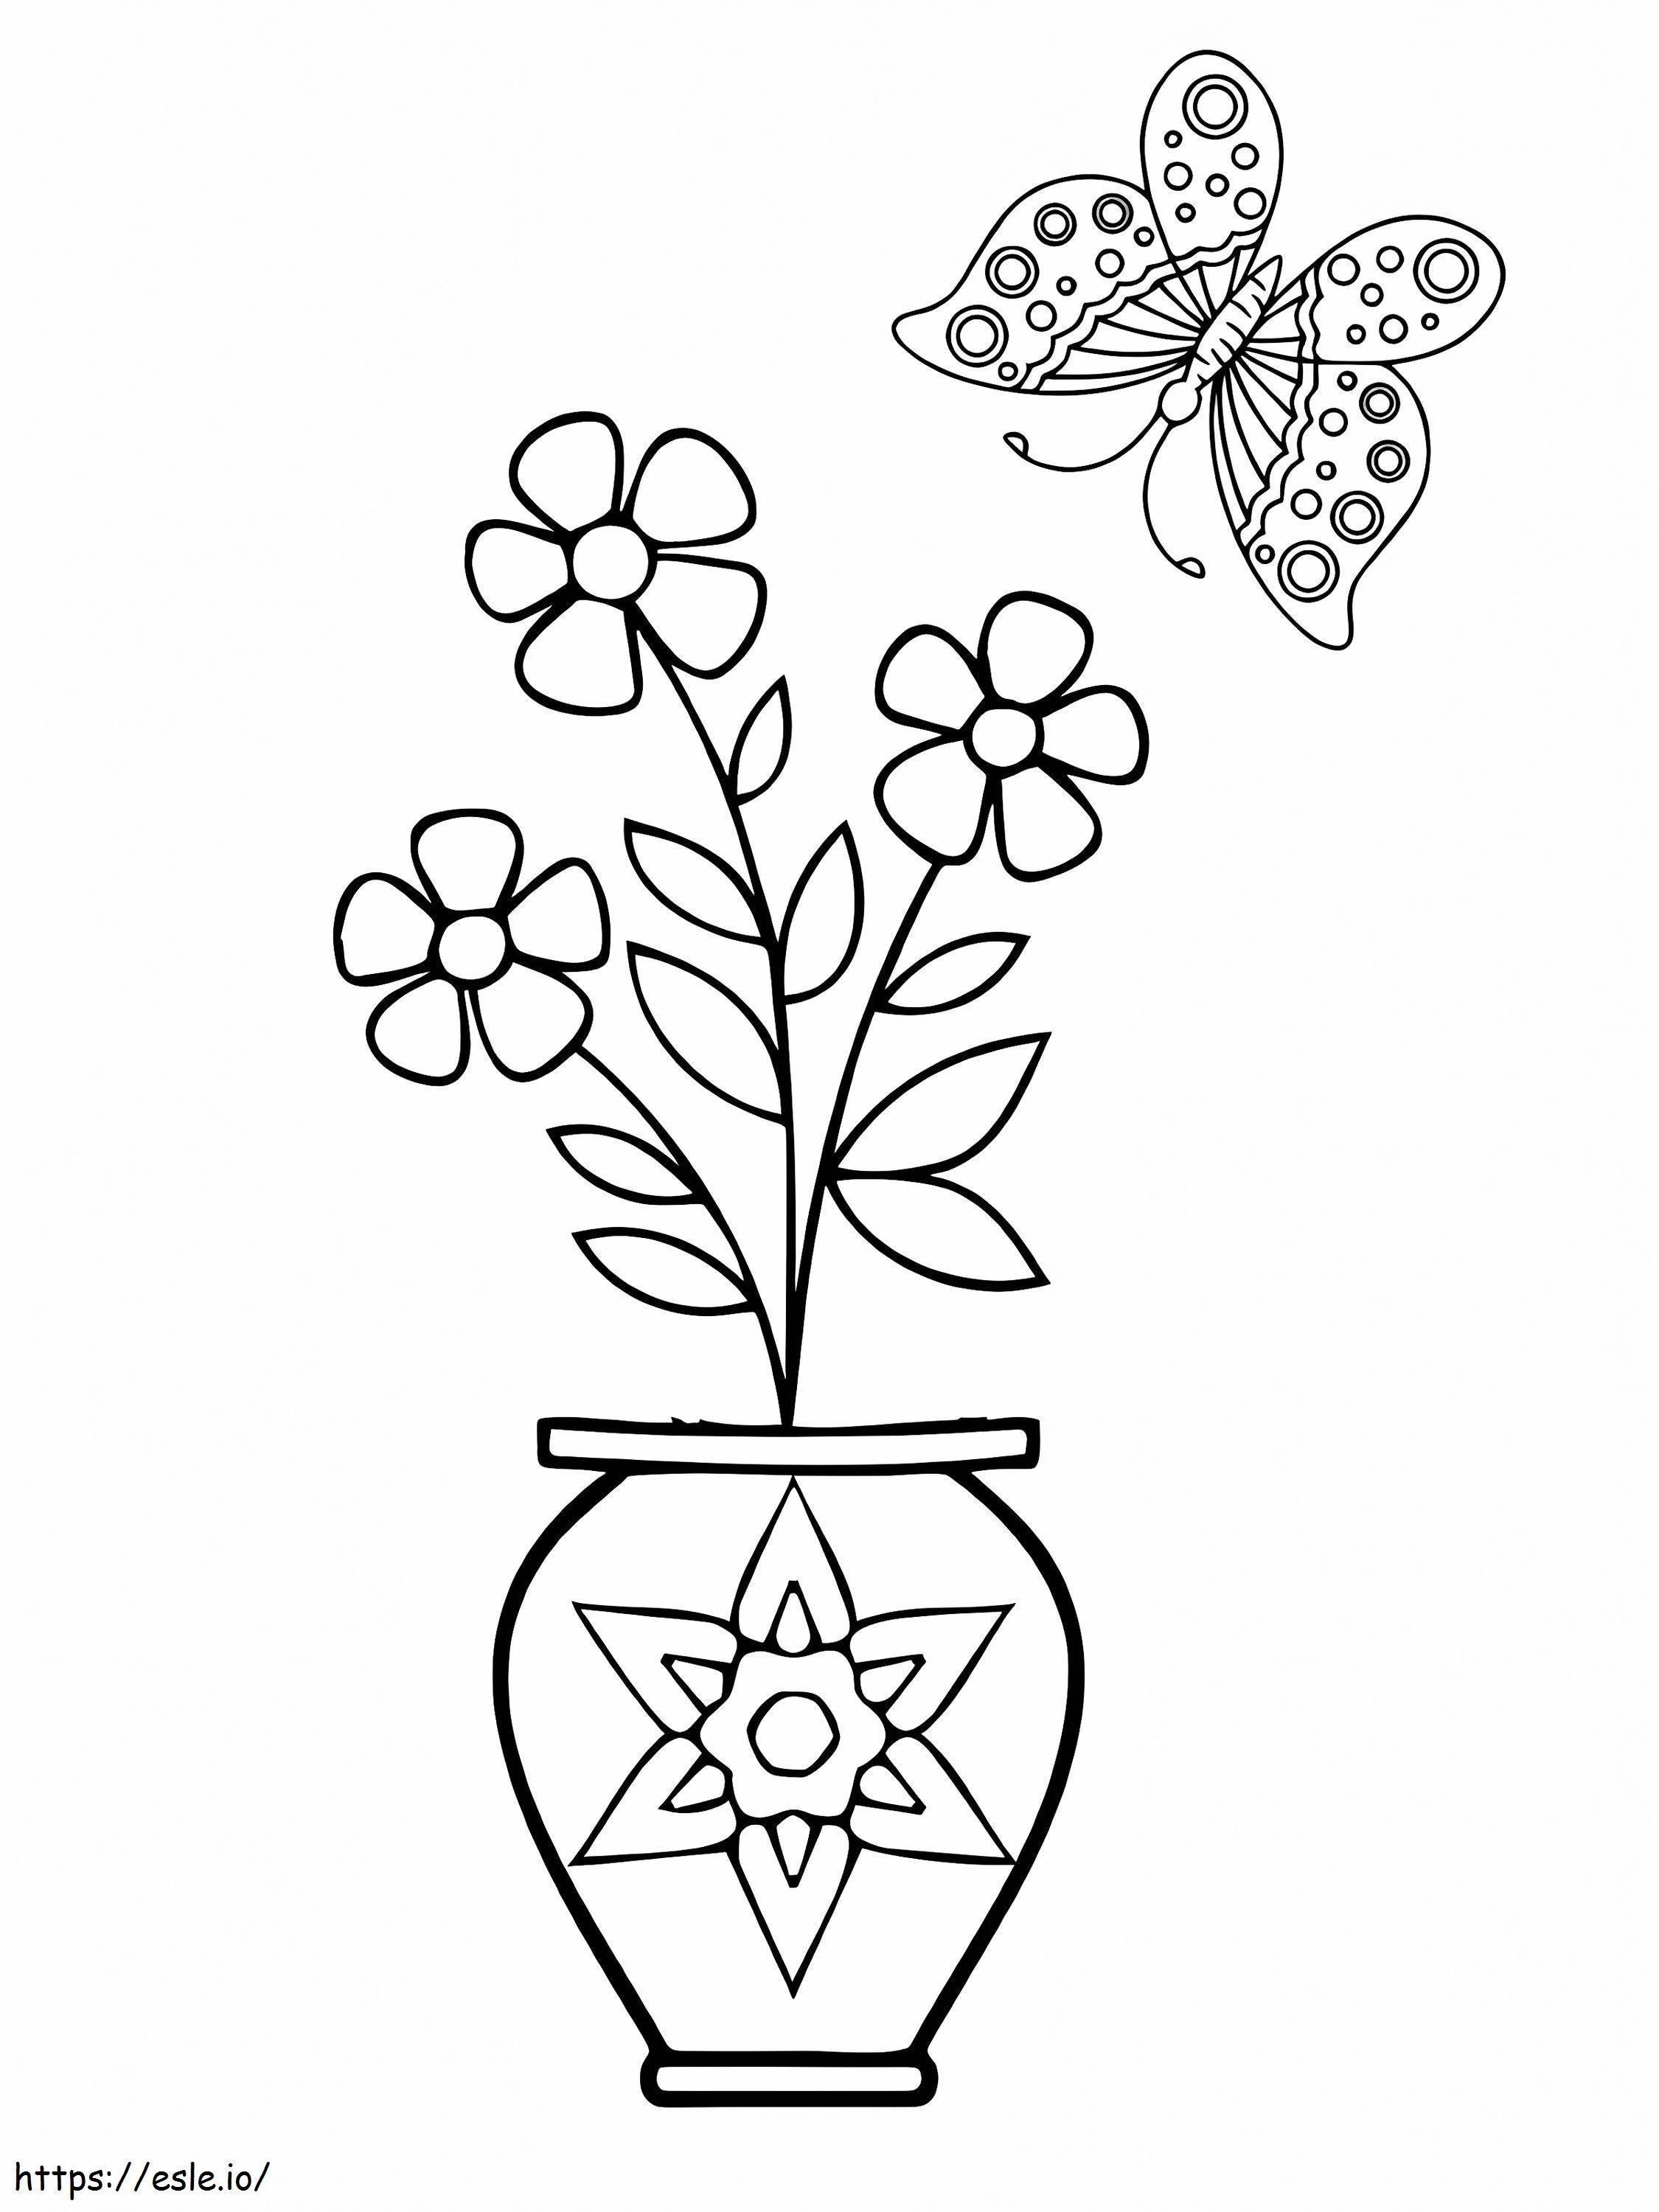 Vaso de flor fácil e borboleta para colorir